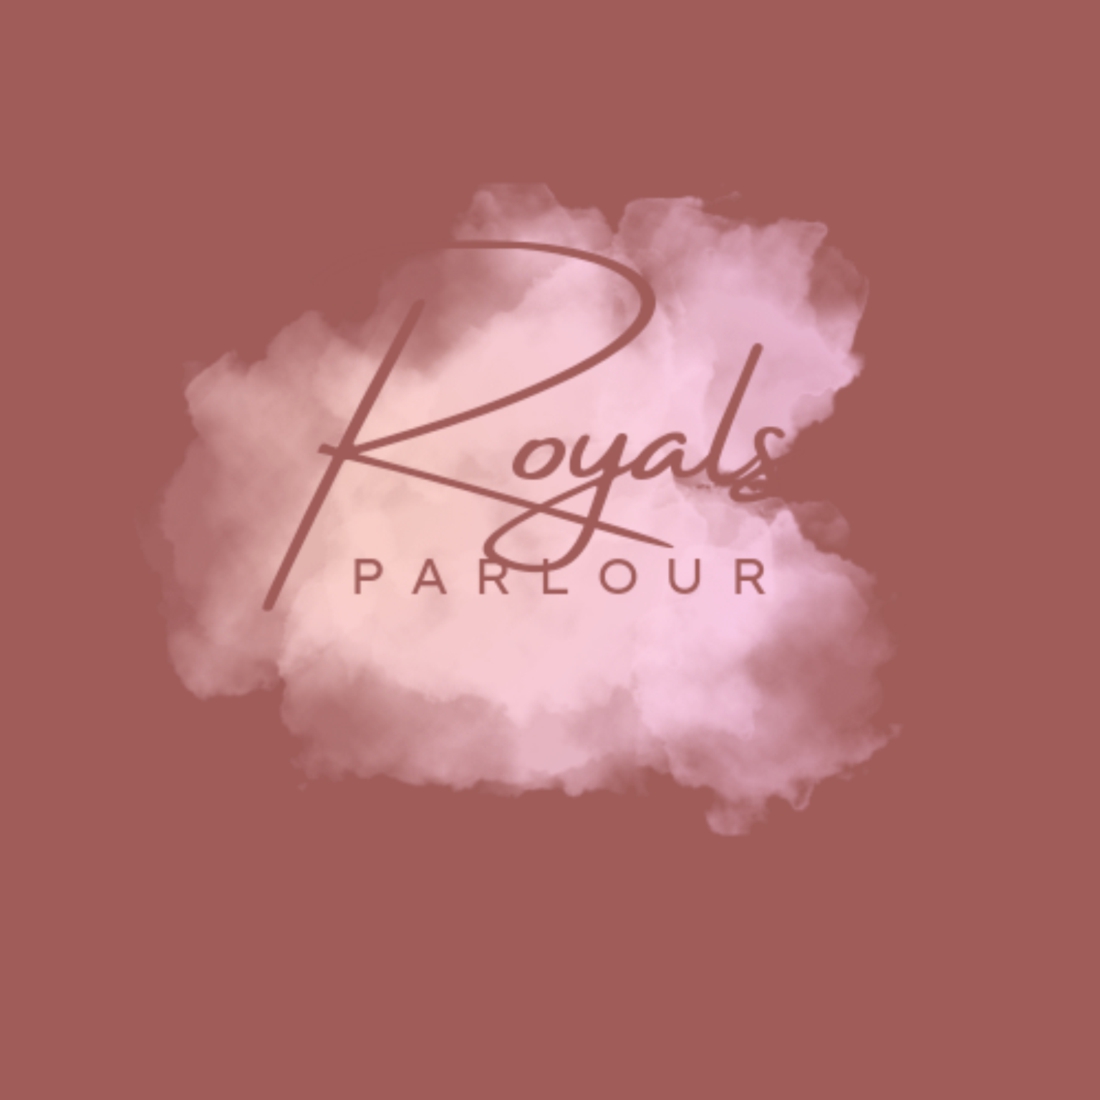 Royals Parlour preview image.